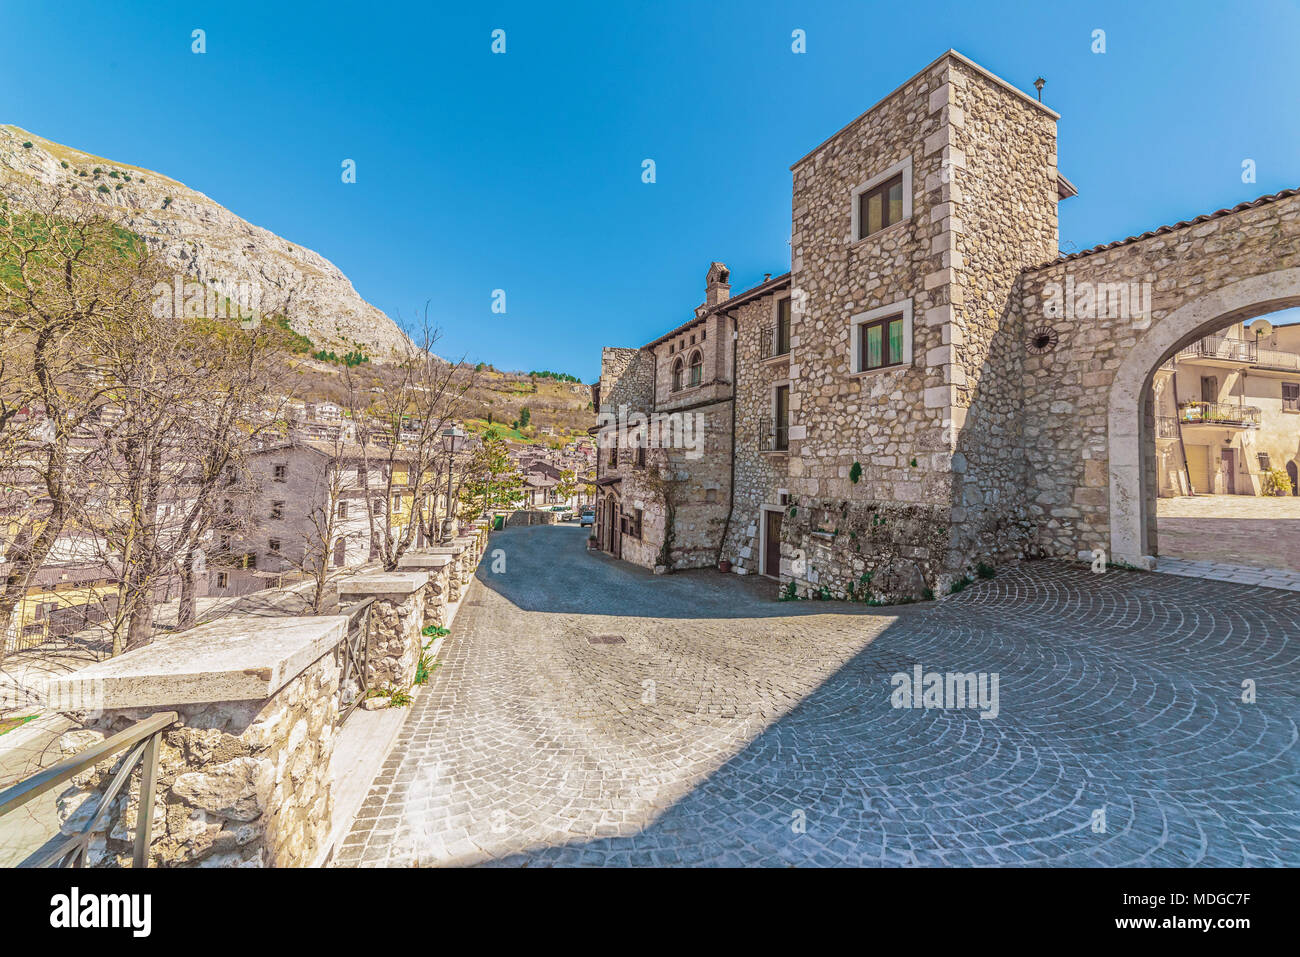 Celano, Italia - un paese di montagna in provincia di L'Aquila, la regione Abruzzo, accanto alla città di Avezzano, il medievale castello di pietra Piccolomini Foto Stock